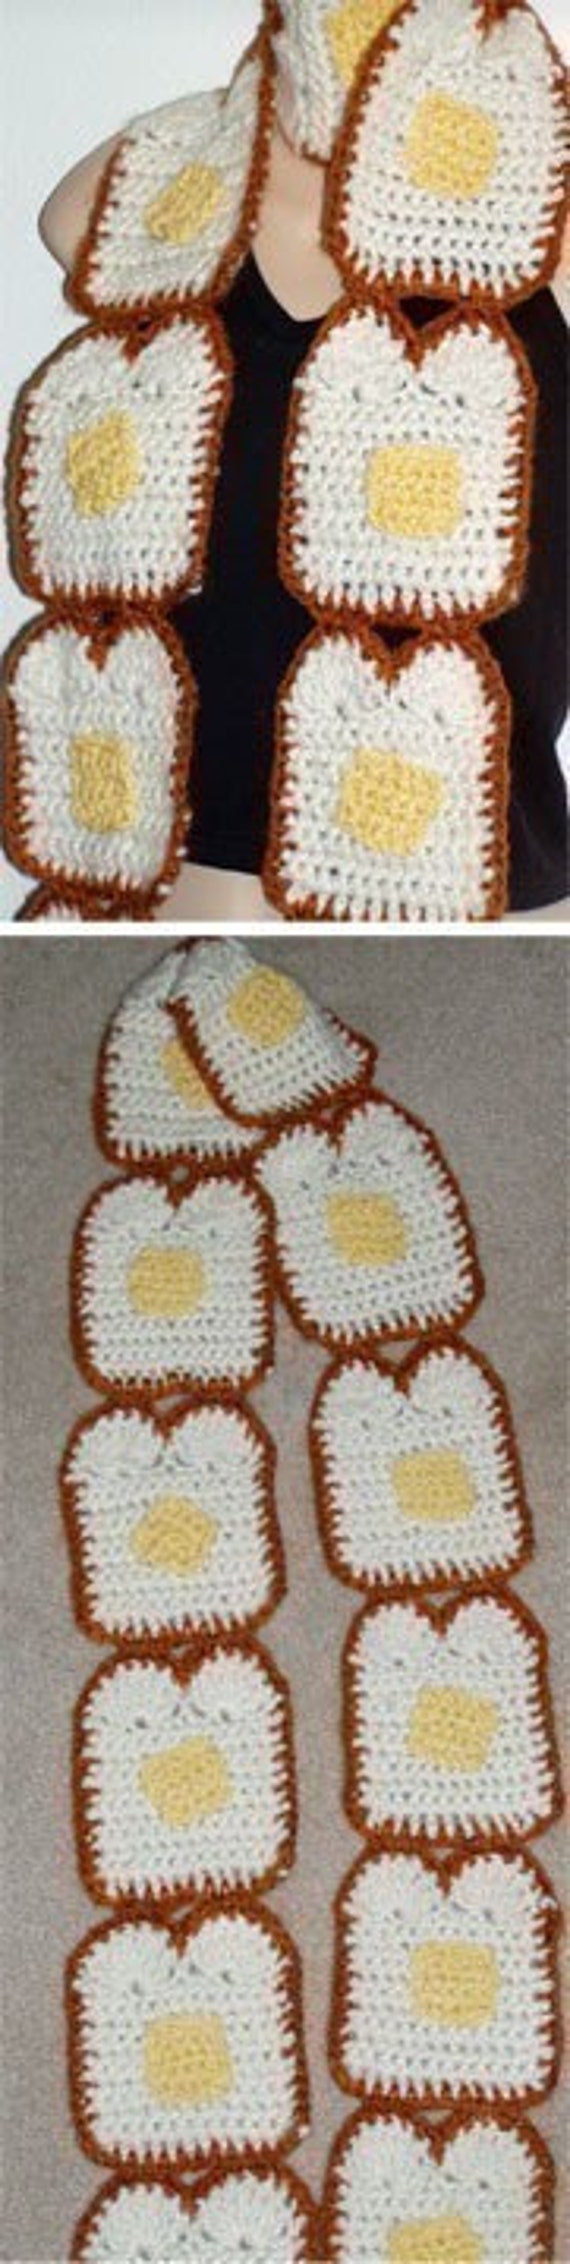 DIY Buttered Toast Bread Scarf food art Crochet pattern